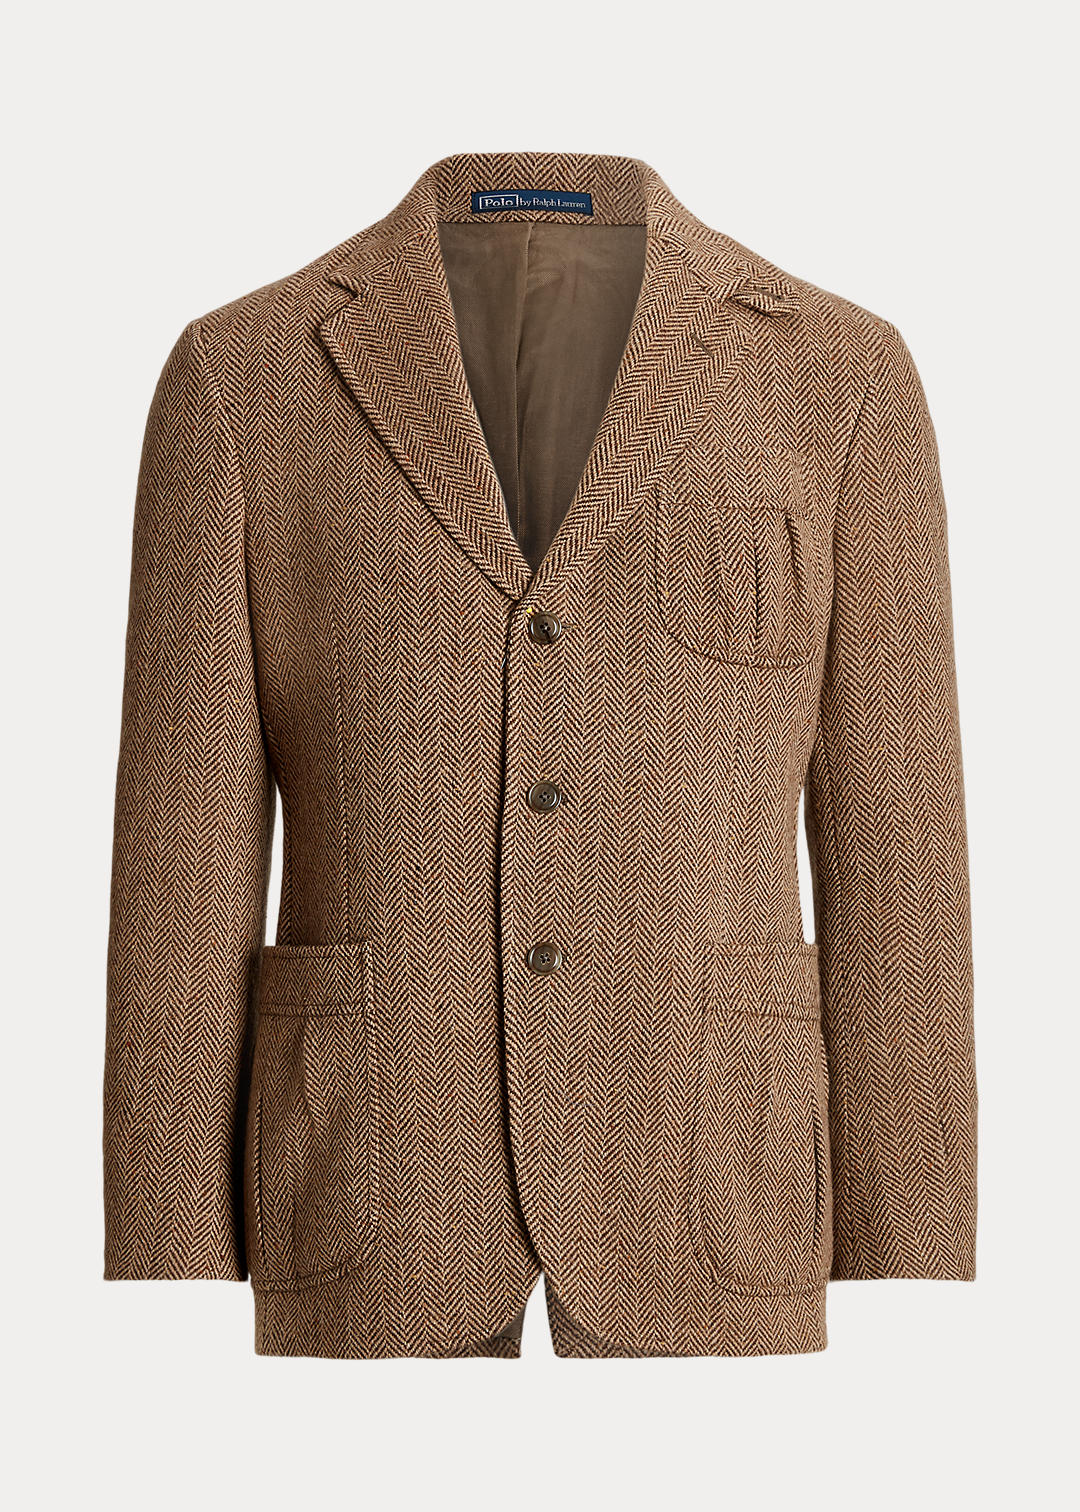 Wool-Blend Herringbone Suit Jacket